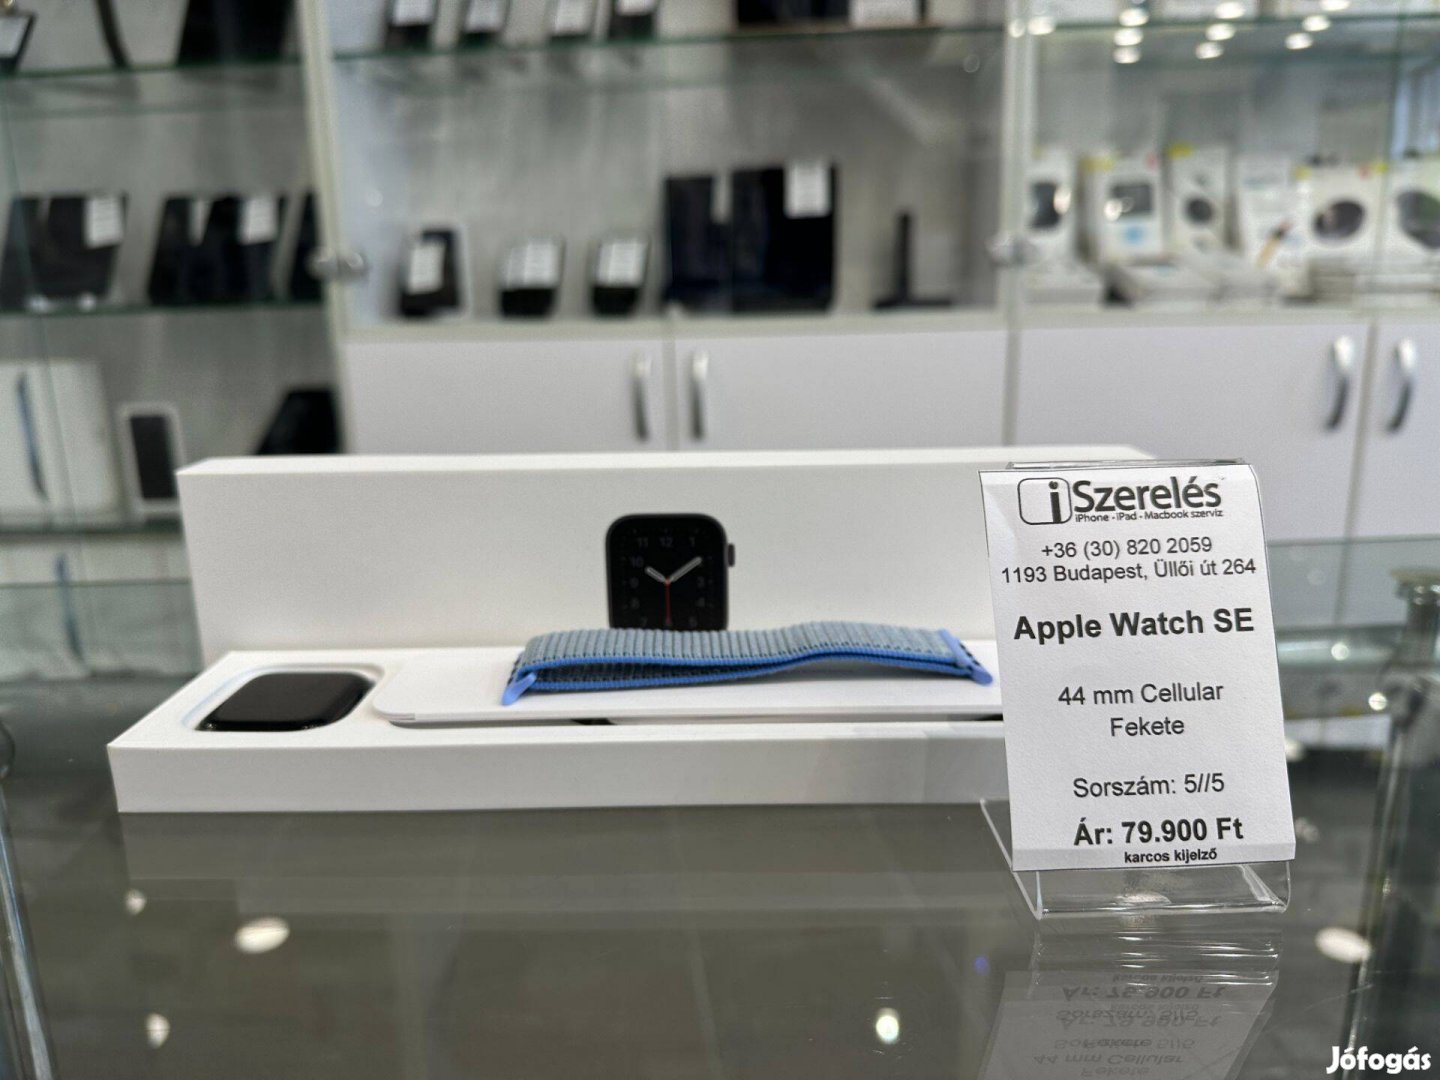 Apple Watch SE 44 mm Cellular fekete garanciával (5/5) iszerelés.hu